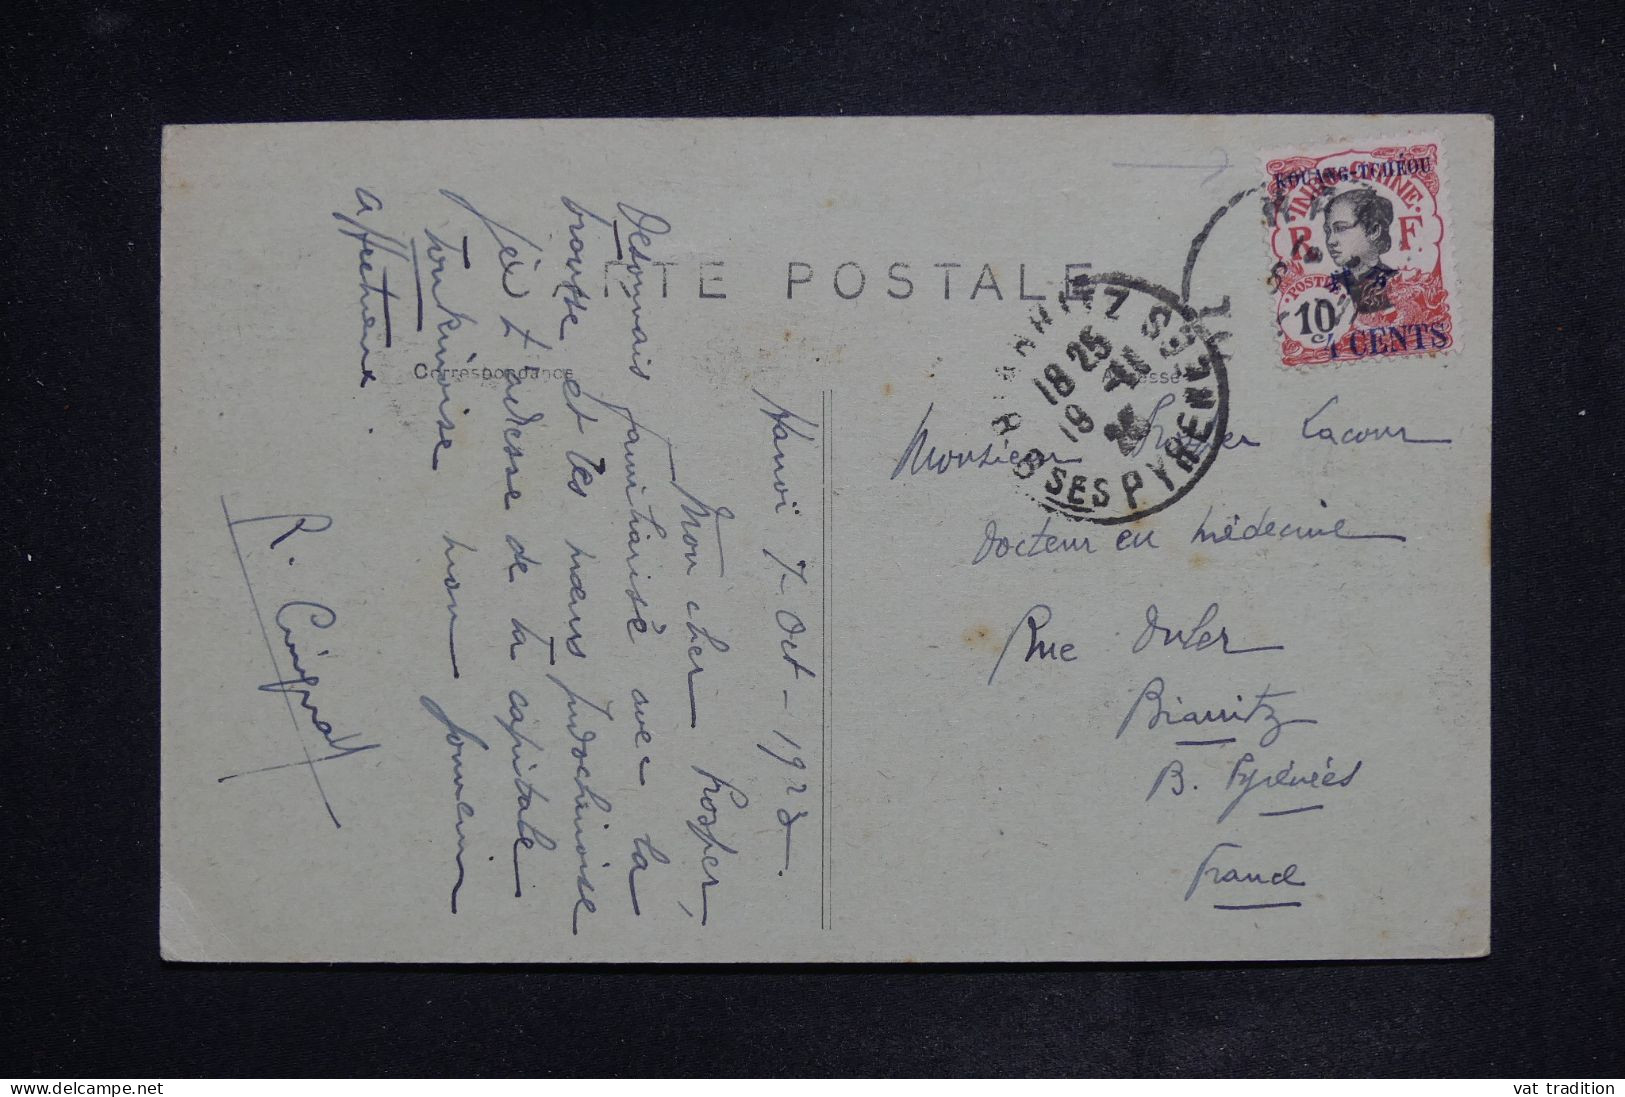 KOUANG TCHEOU - Affranchissement De Hanoi Sur Carte Postale En 1923 Pour La France  - L 150964 - Storia Postale